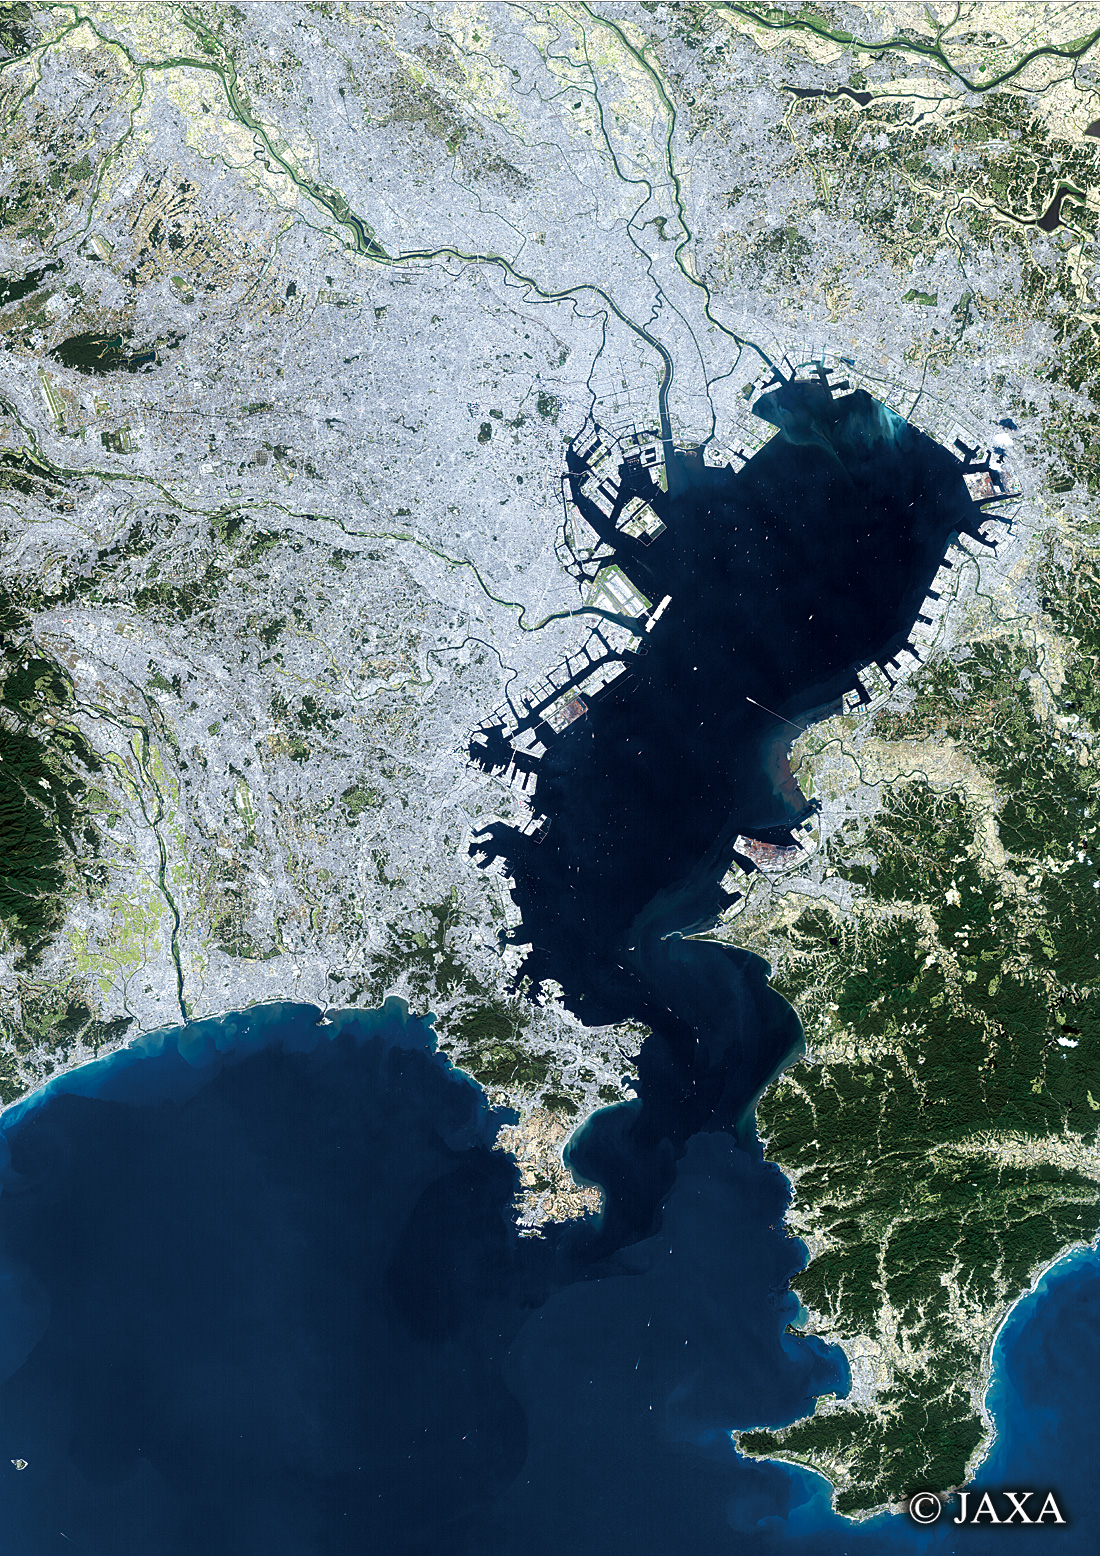 だいちから見た日本の都市 相模湾・東京湾周辺:衛星画像